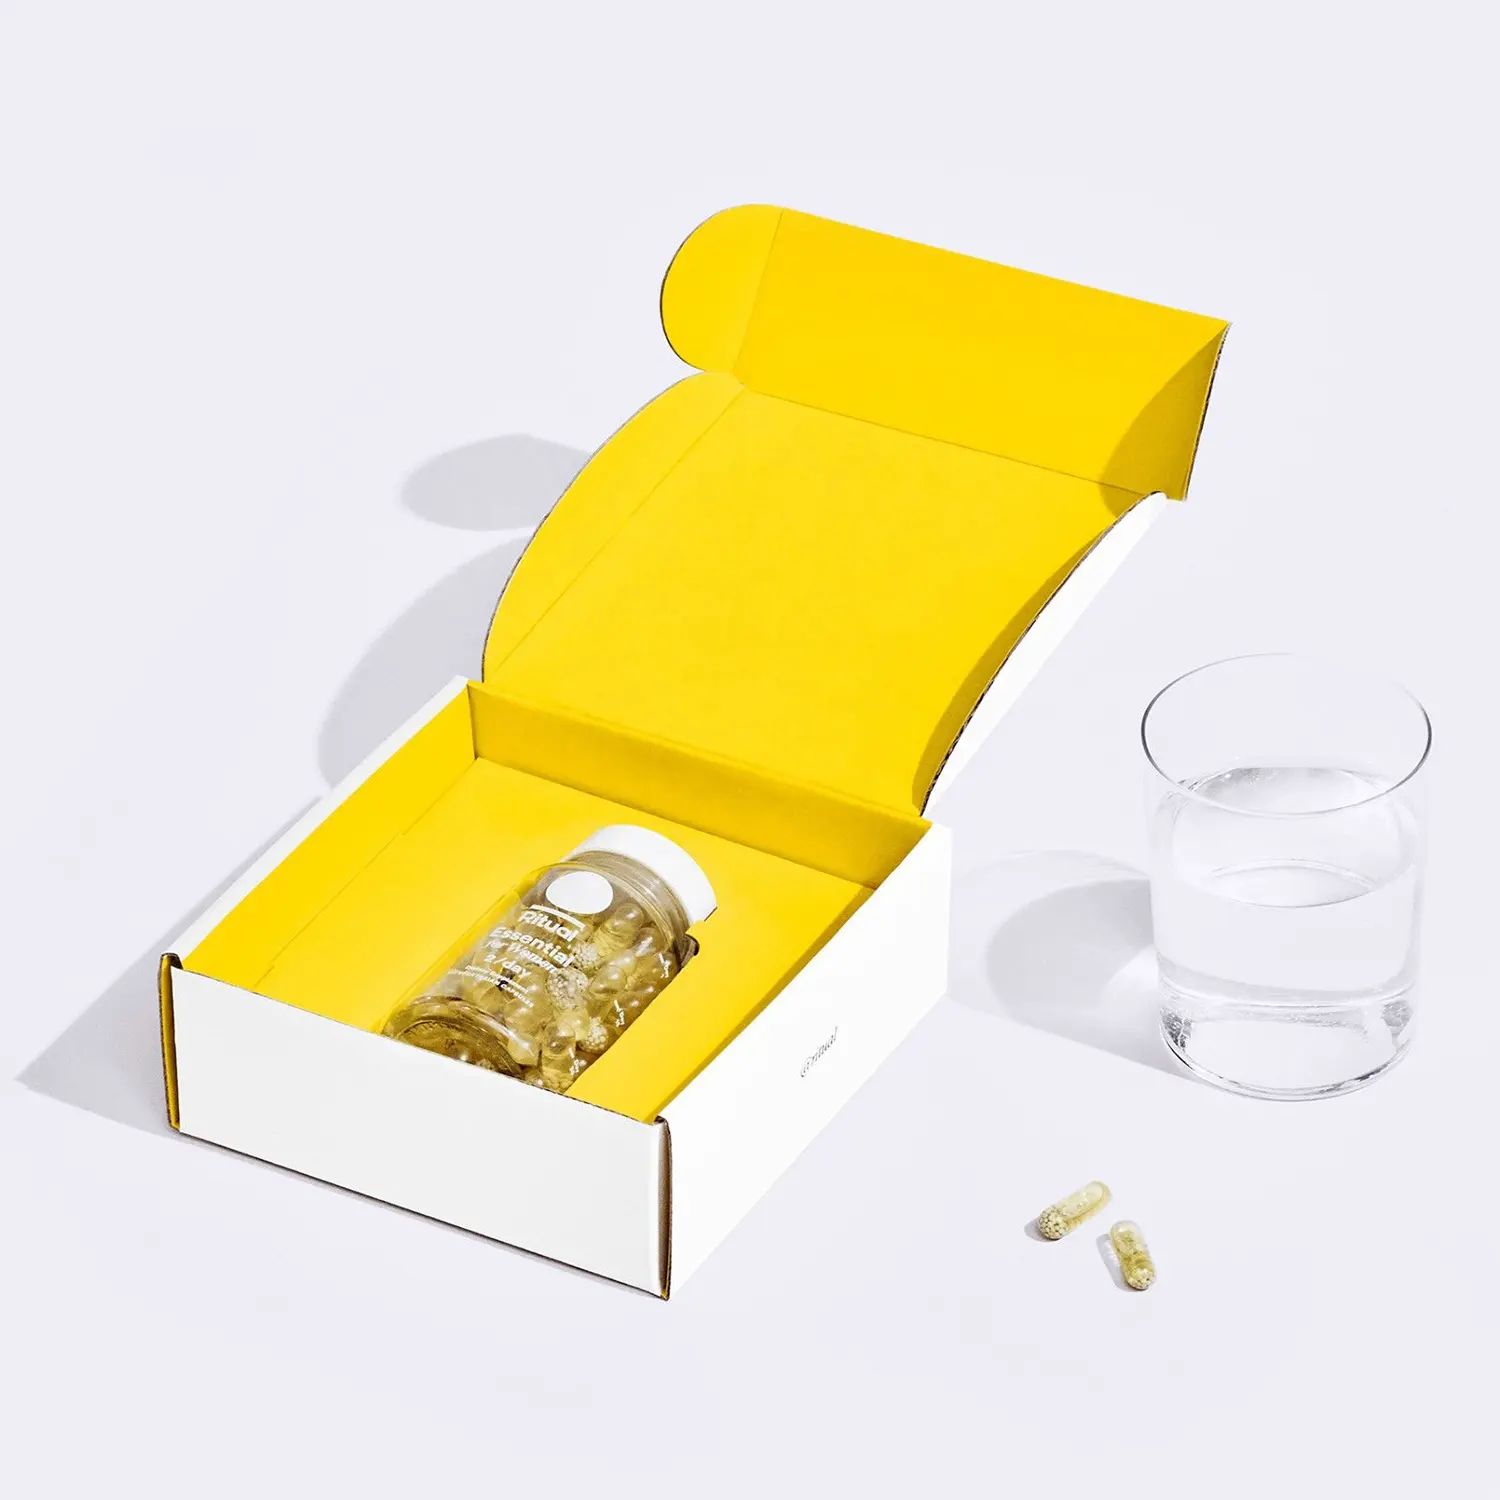 מותאם אישית צהוב בריאות מוצרים בקבוק אריזת תיבת קופסות גליות מיילר עם מותאם אישית מחזיק הכנס